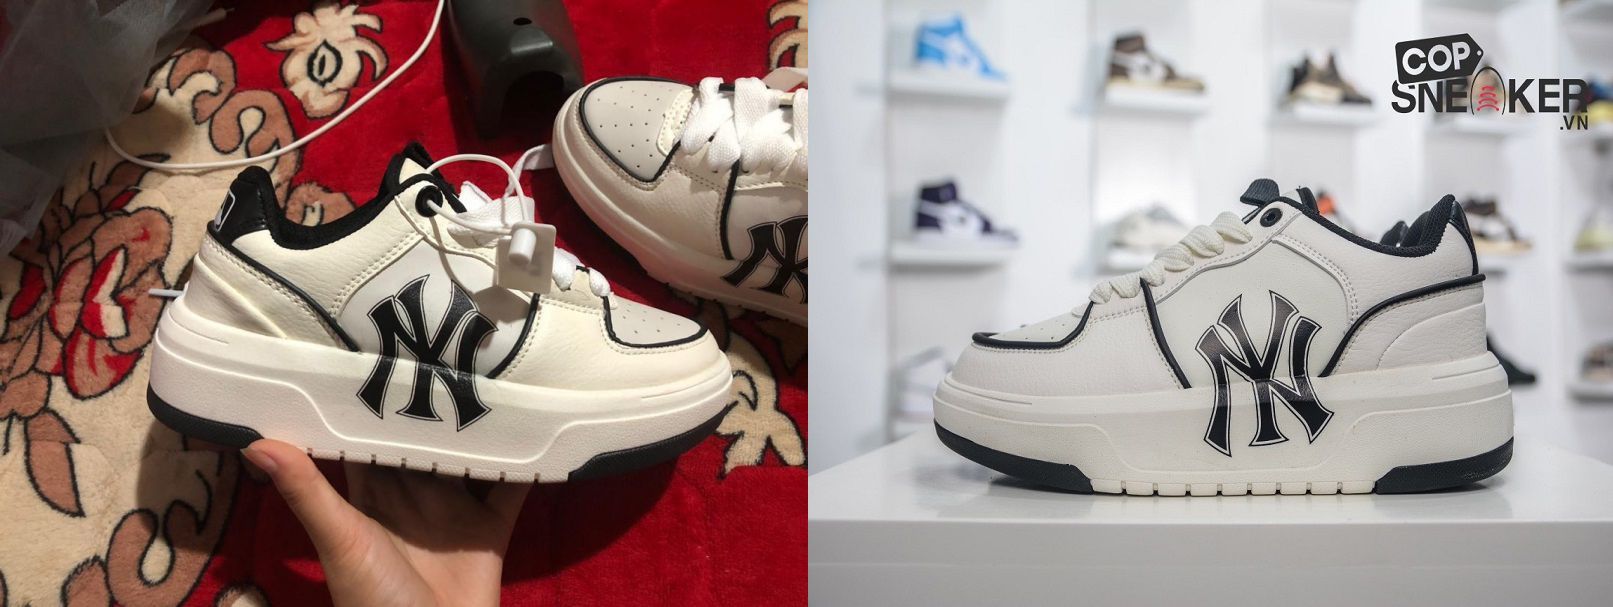 Phân biệt giày Replica Super fake và Fake 1  Sneaker Daily